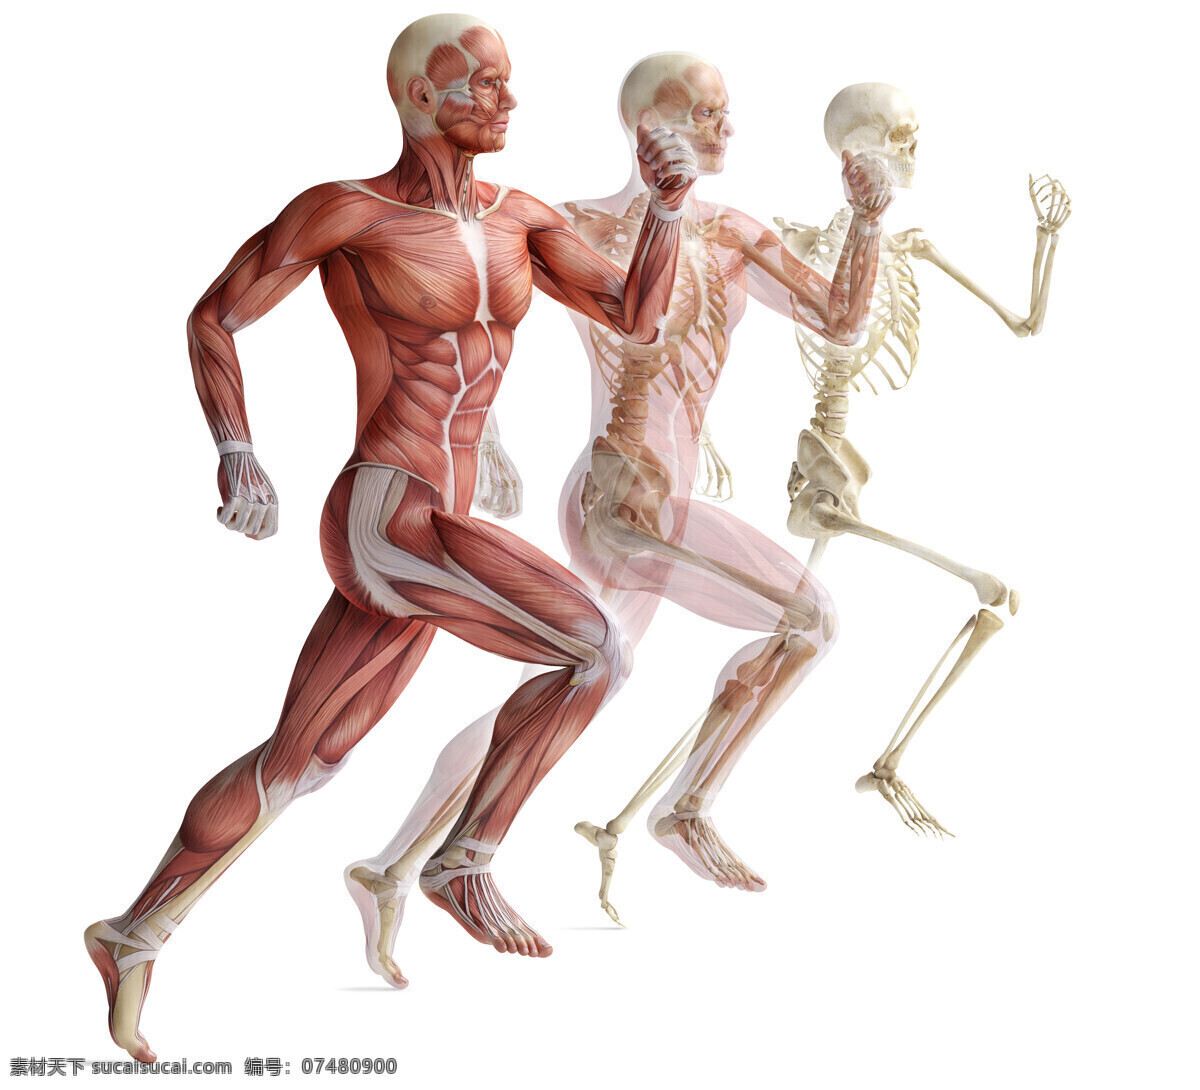 人体 运动 示意图 运动示意图 肌肉运动展示 骨骼运动展示 肌肉运动 骨骼运动 运动解剖图 肌肉解剖图 运动展示图 运动展示 骨骼展示 肌肉展示 现代科技 医疗护理